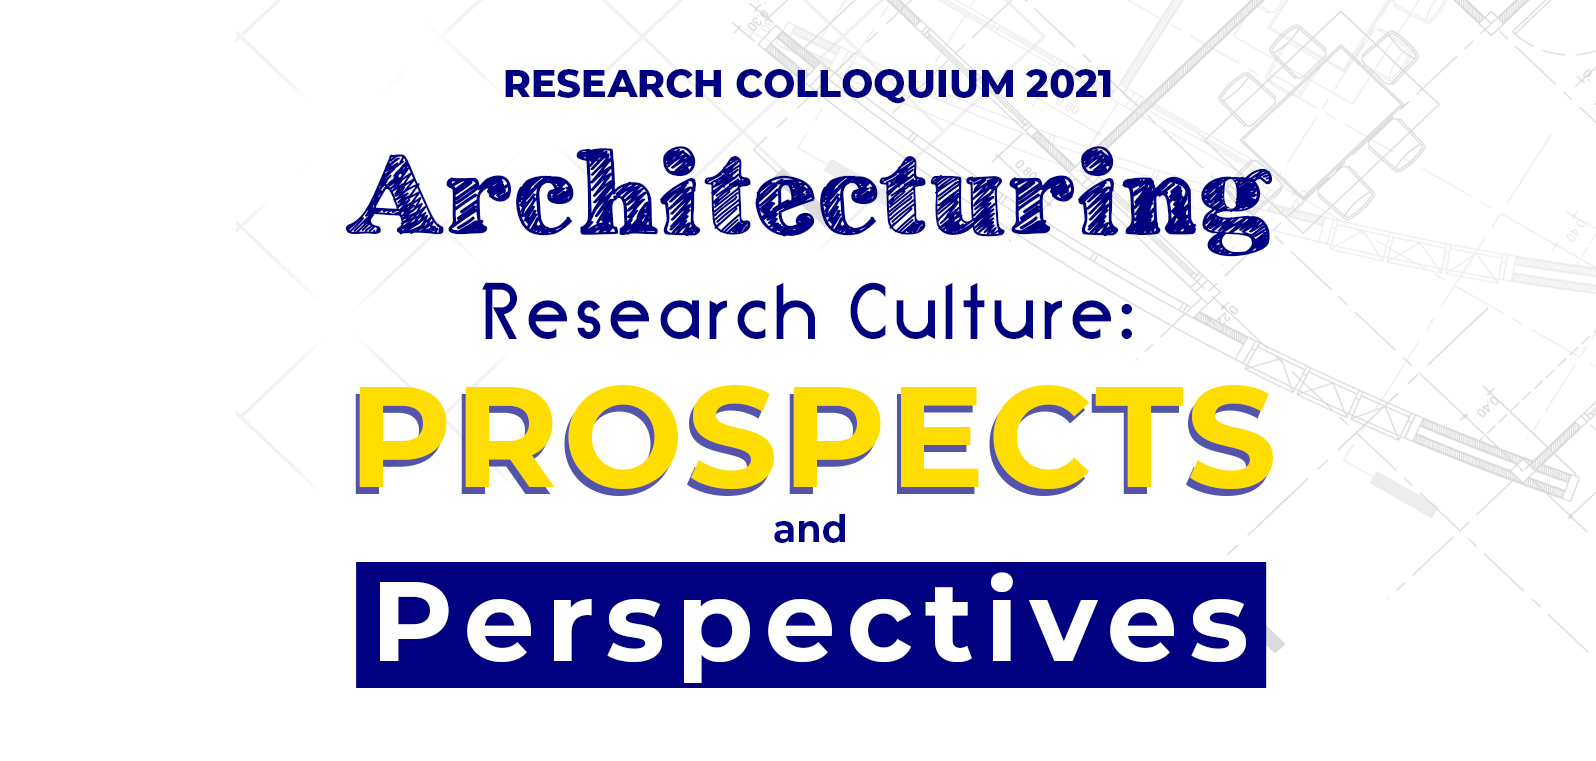 Research Colloquium 2021